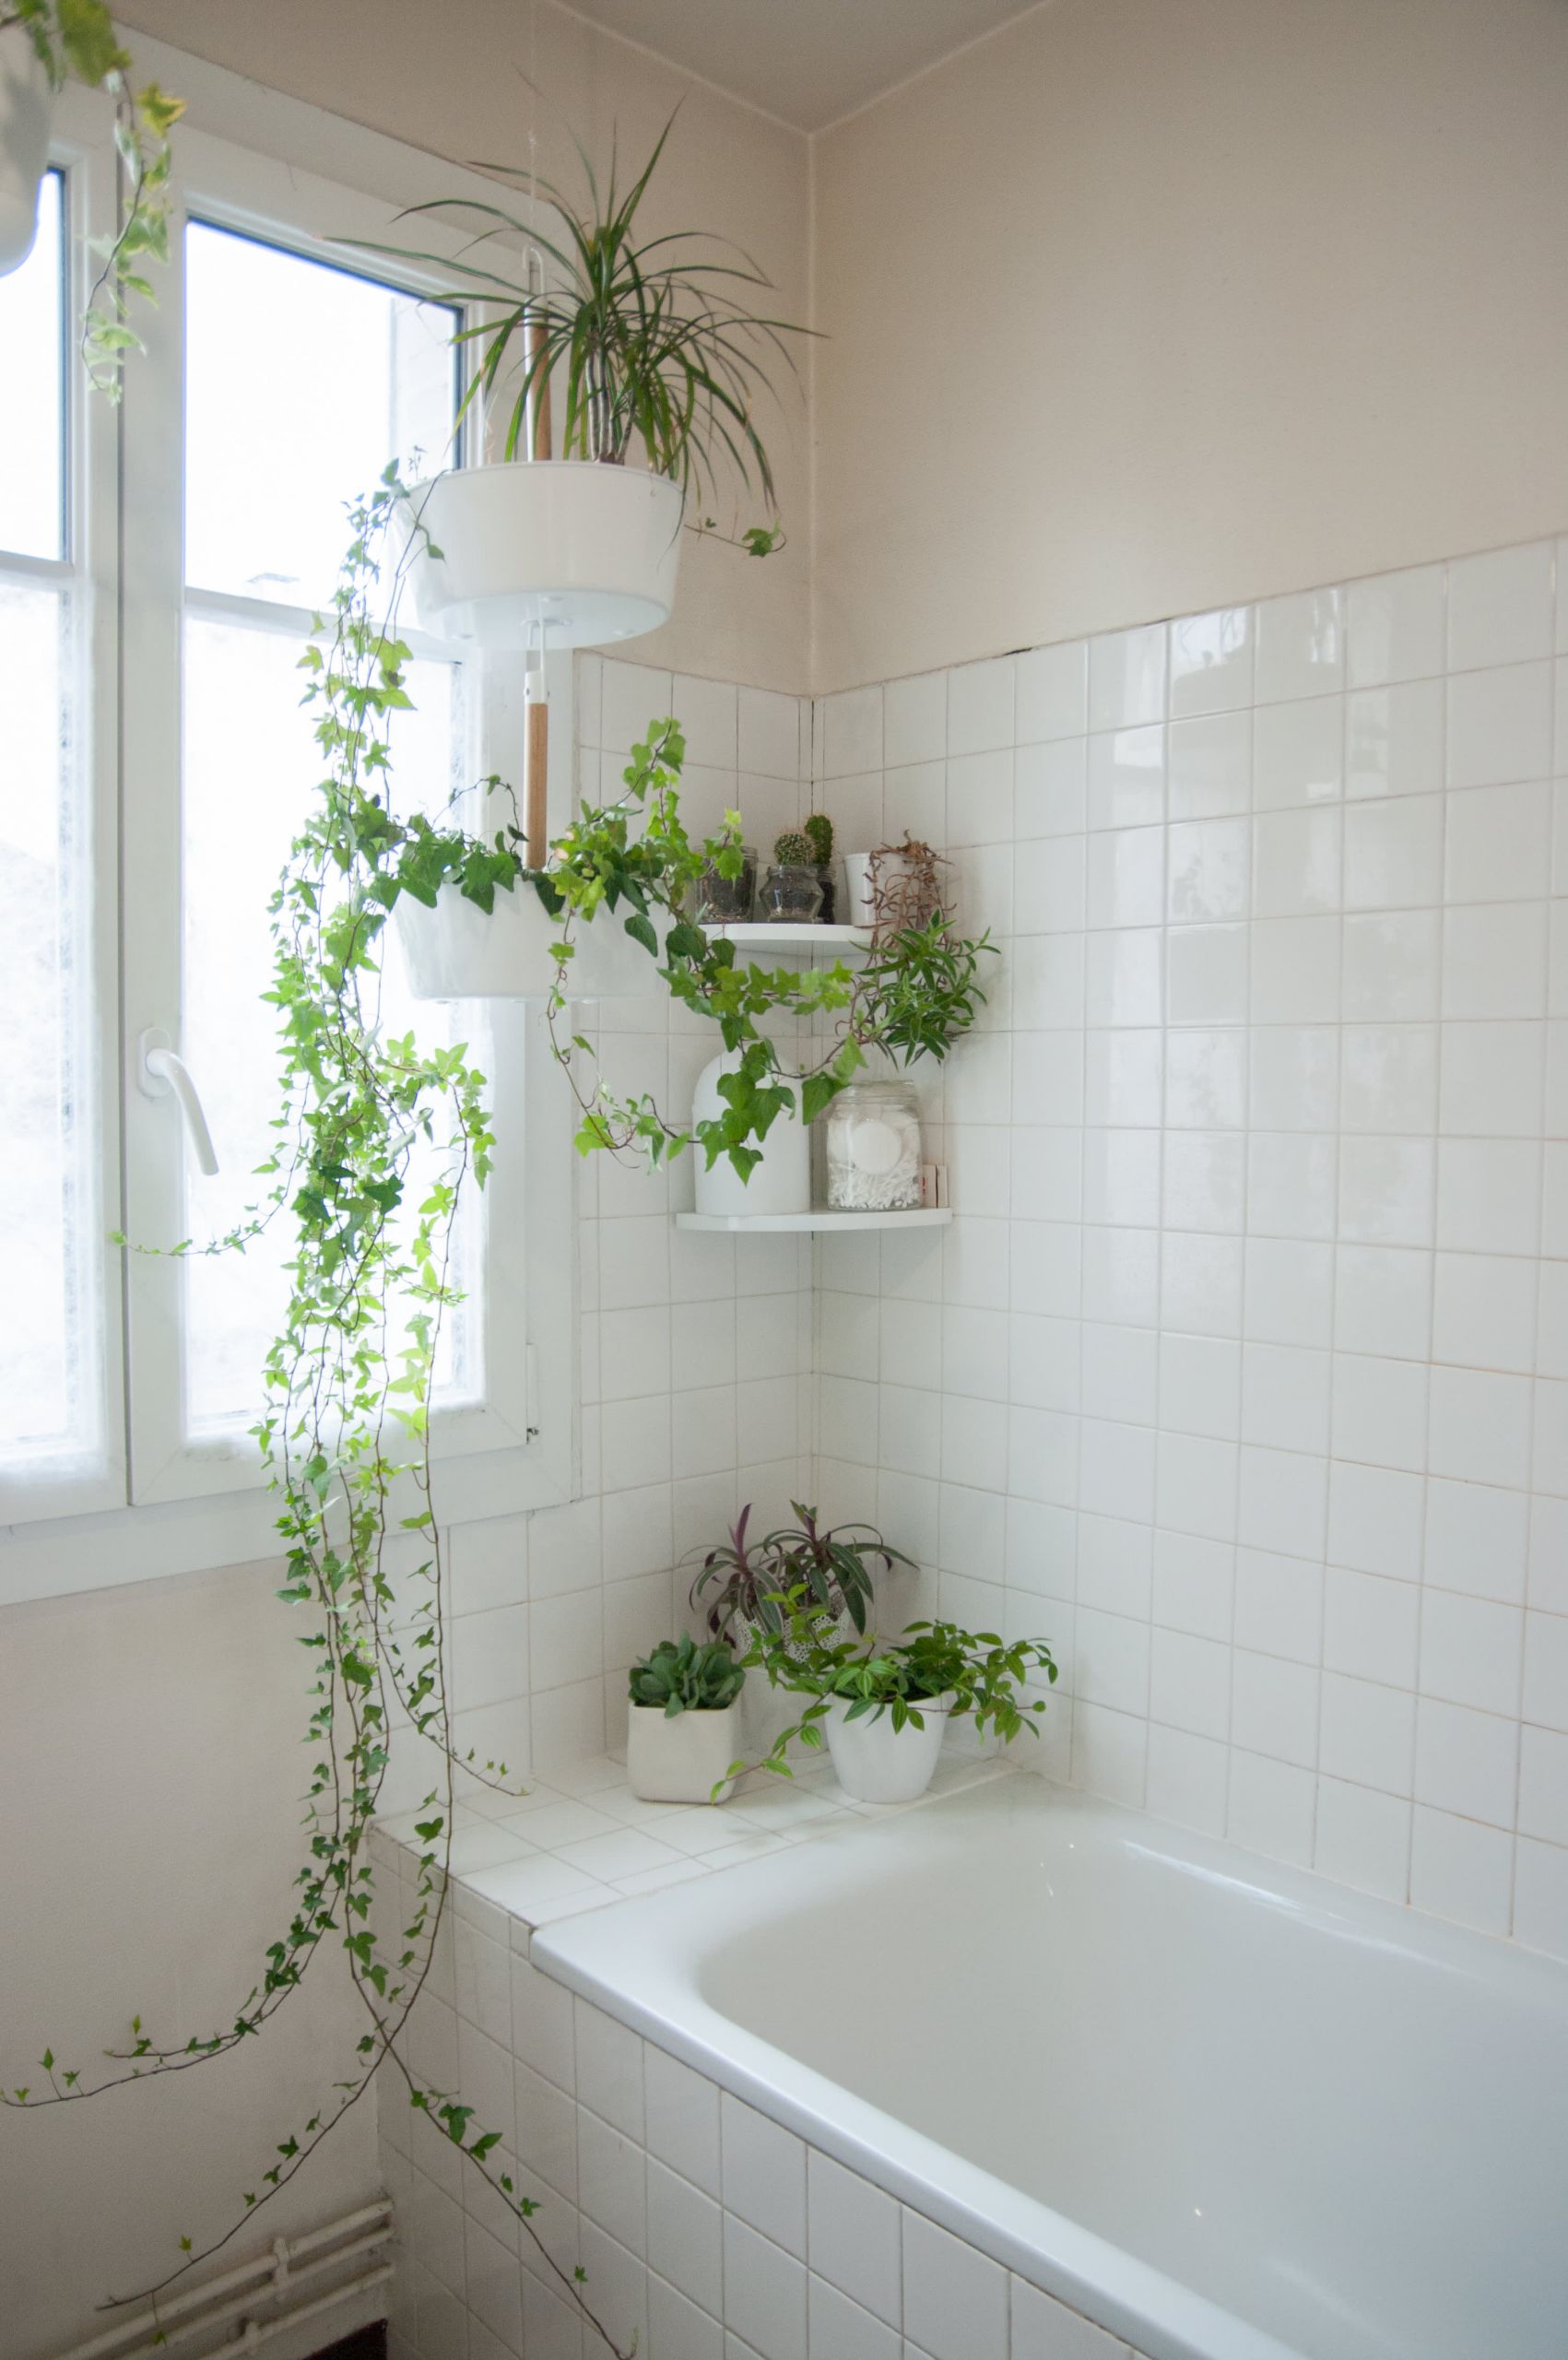 Apartment Bathroom Decorating Ideas
 50 Best Bathroom Design Ideas